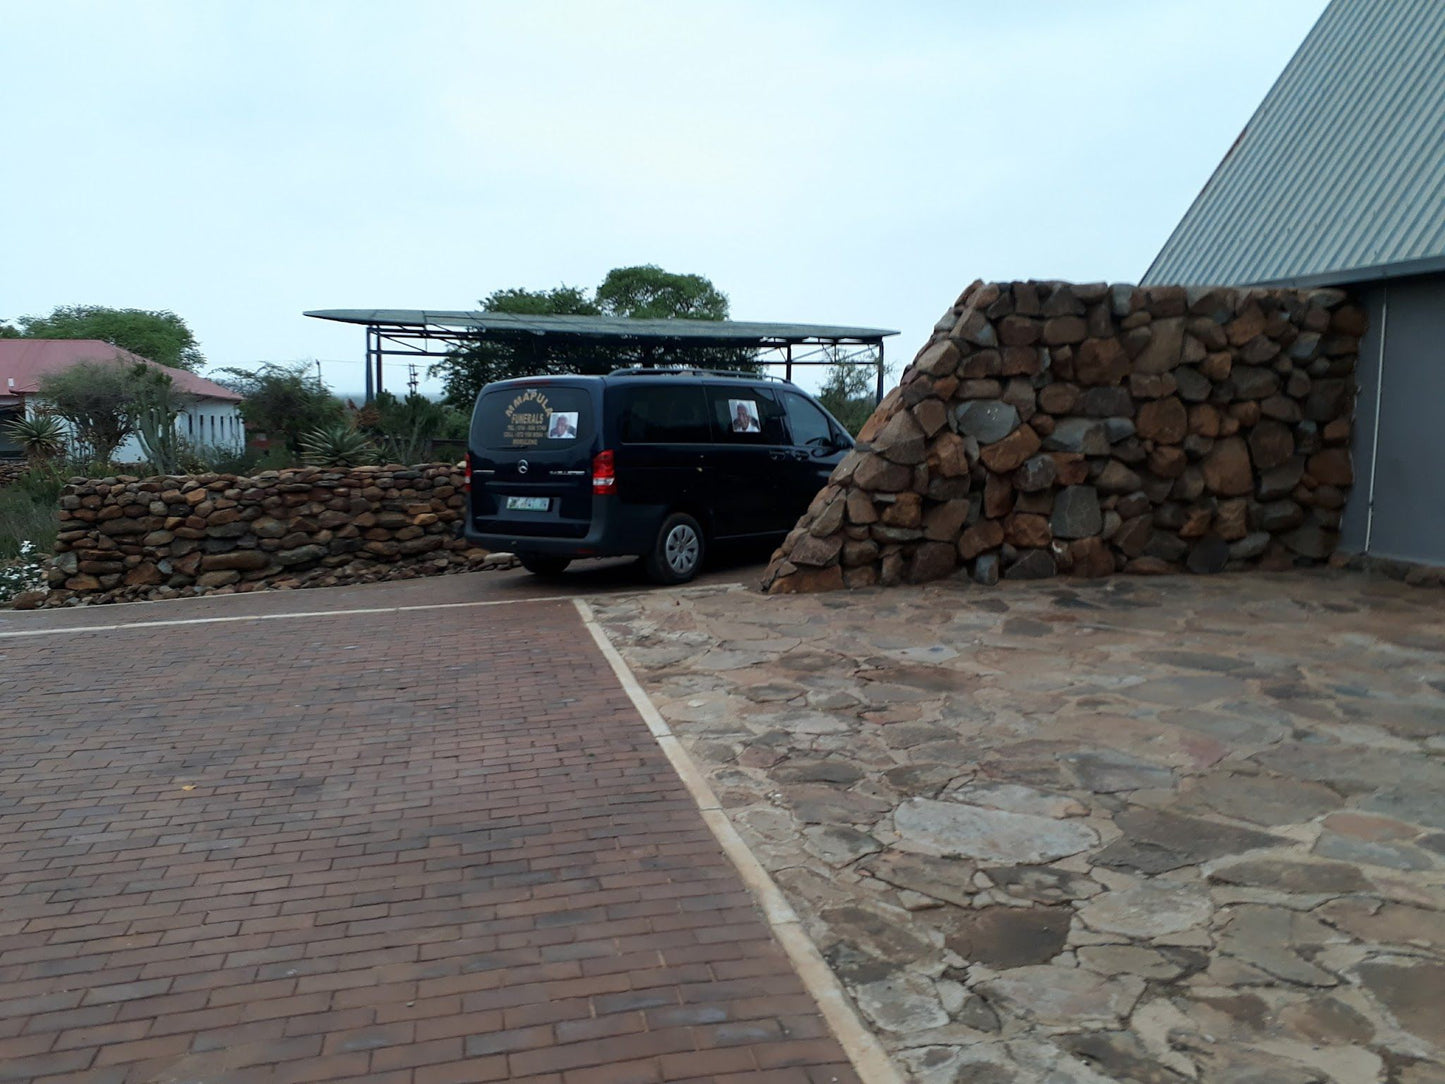  Mphebatho Cultural Museum & Moruleng Cultural Precinct